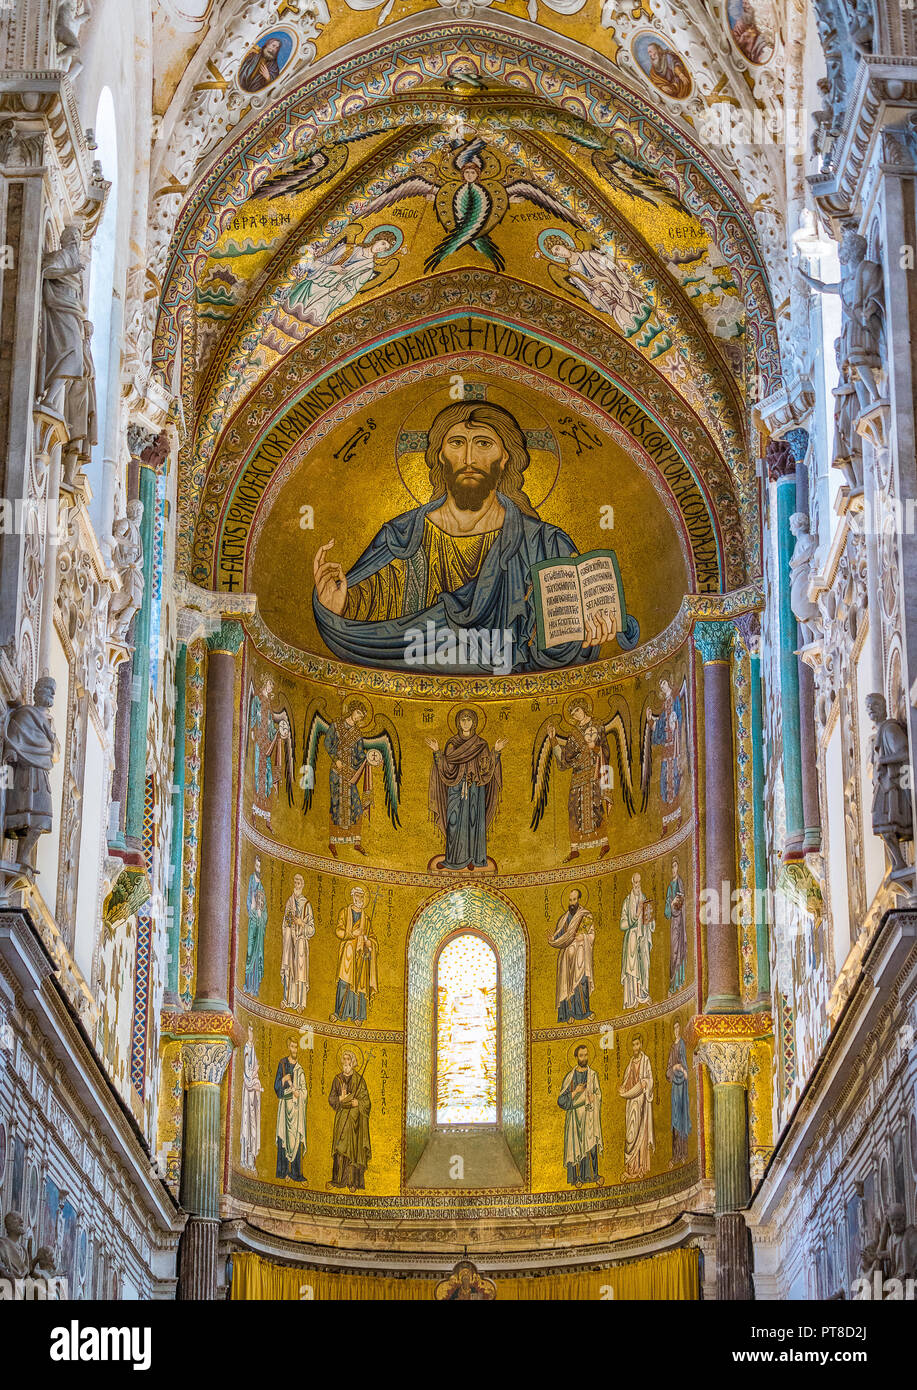 Goldene Mosaik mit Christus Pantokrator in der Apsis der Kathedrale von Cefalù. Sizilien, Süditalien. Stockfoto